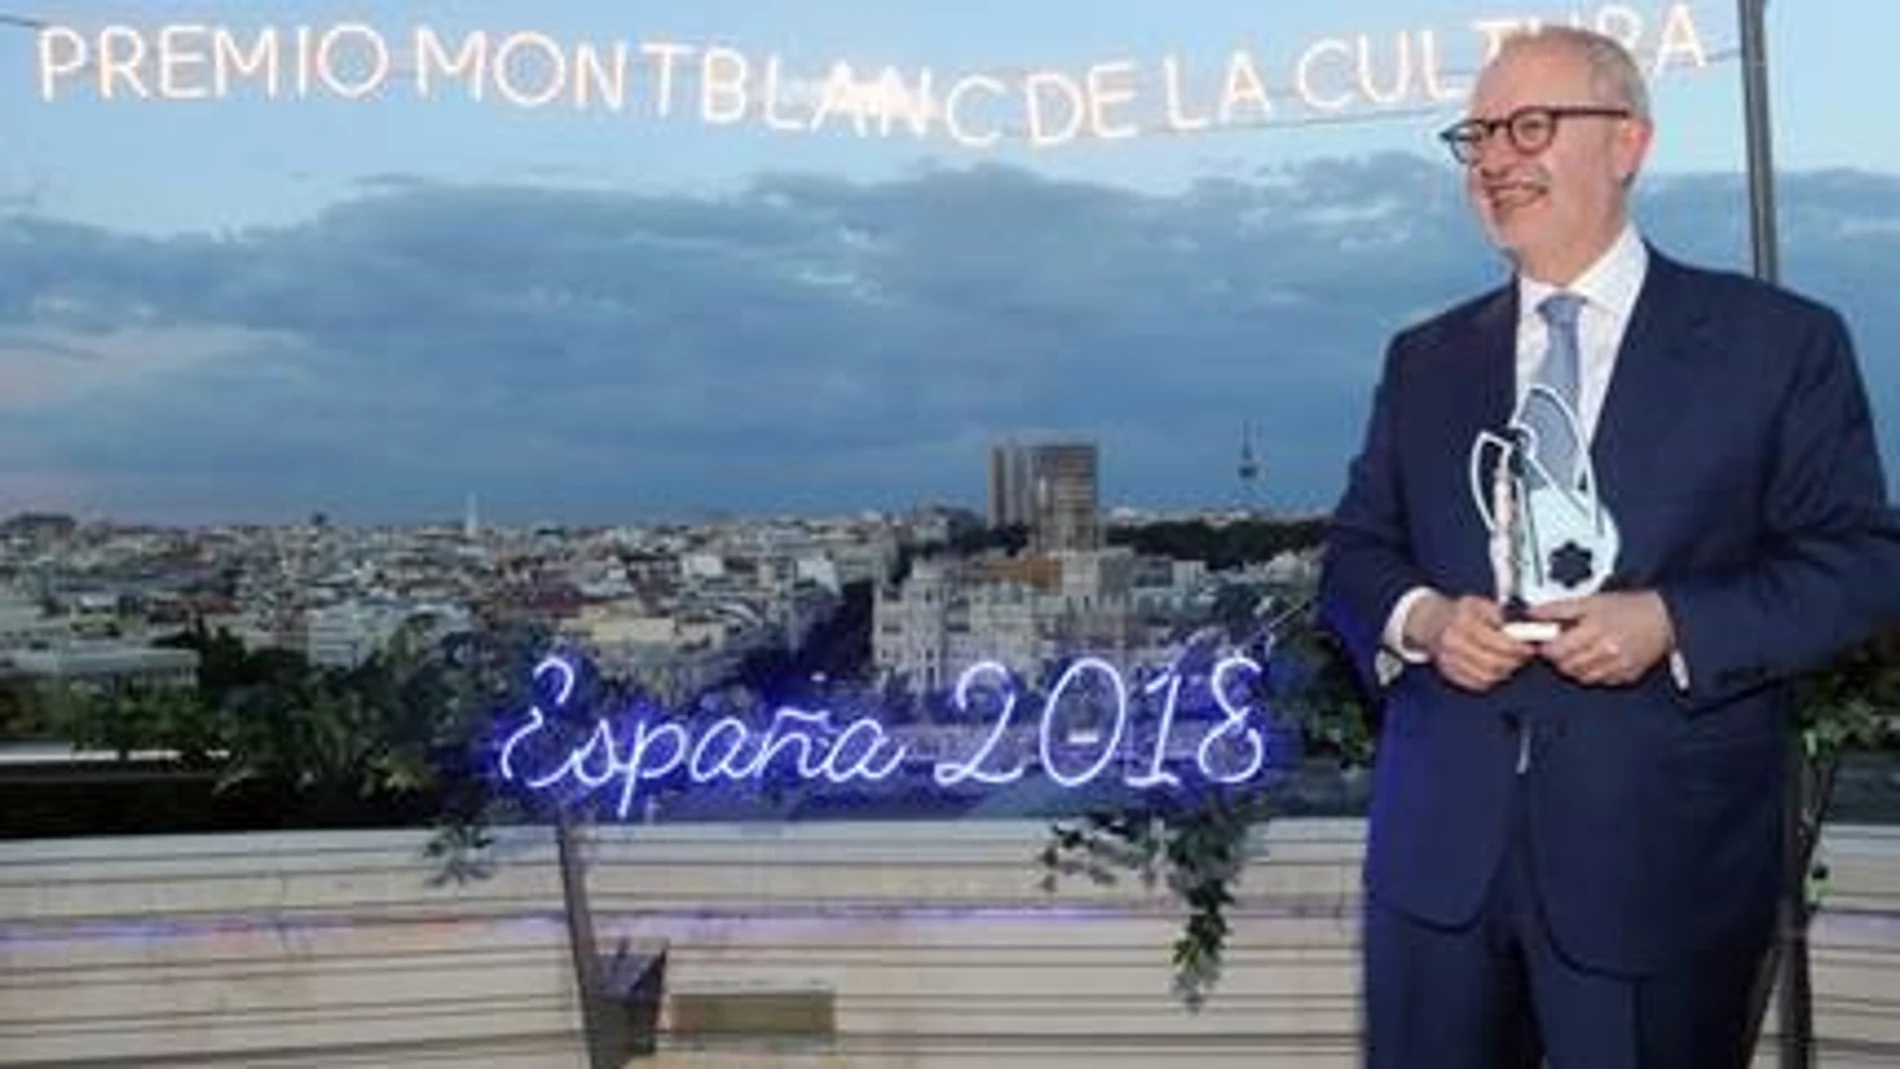 José María Lafuente recibe el Premio Montblanc de la Cultura 2018 por su Espectacular Archivo Lafuente